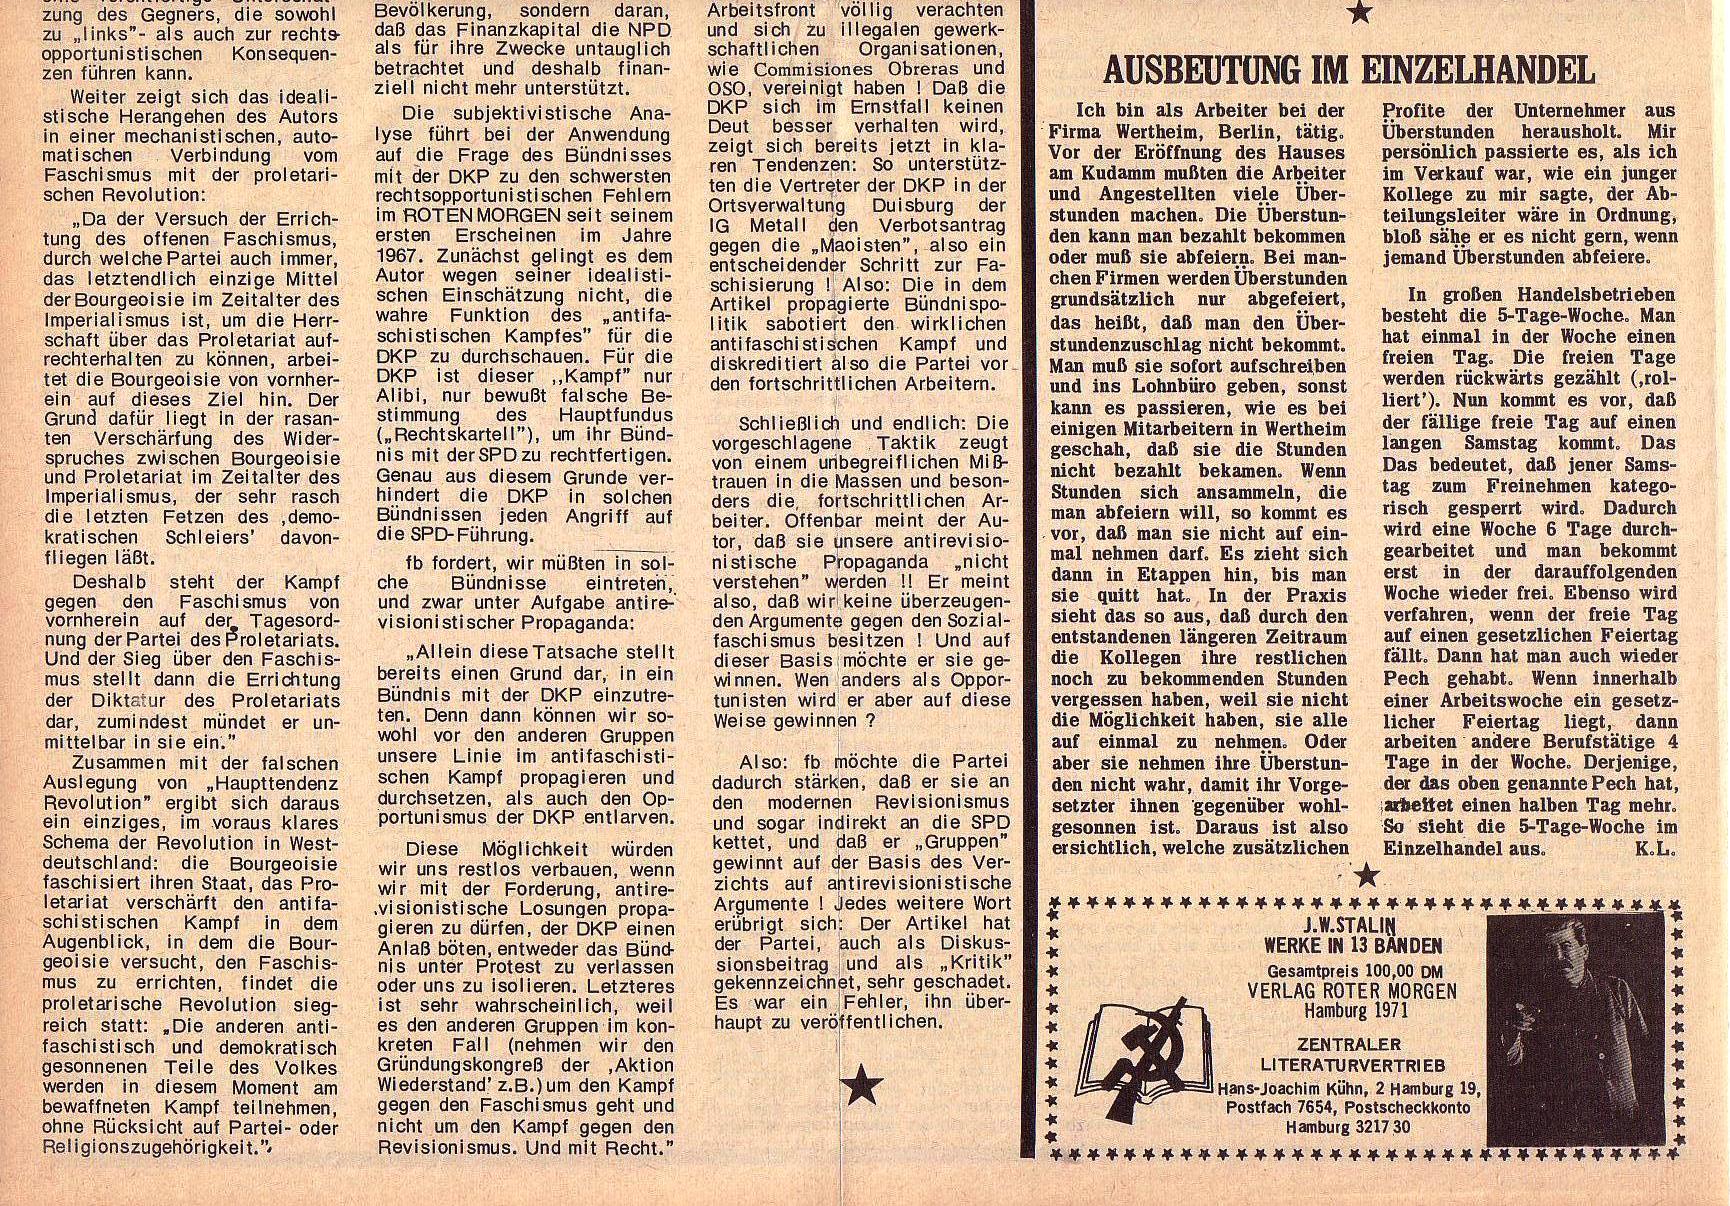 Roter Morgen, 5. Jg., 11. Oktober 1971, Nr. 11, Seite 4b